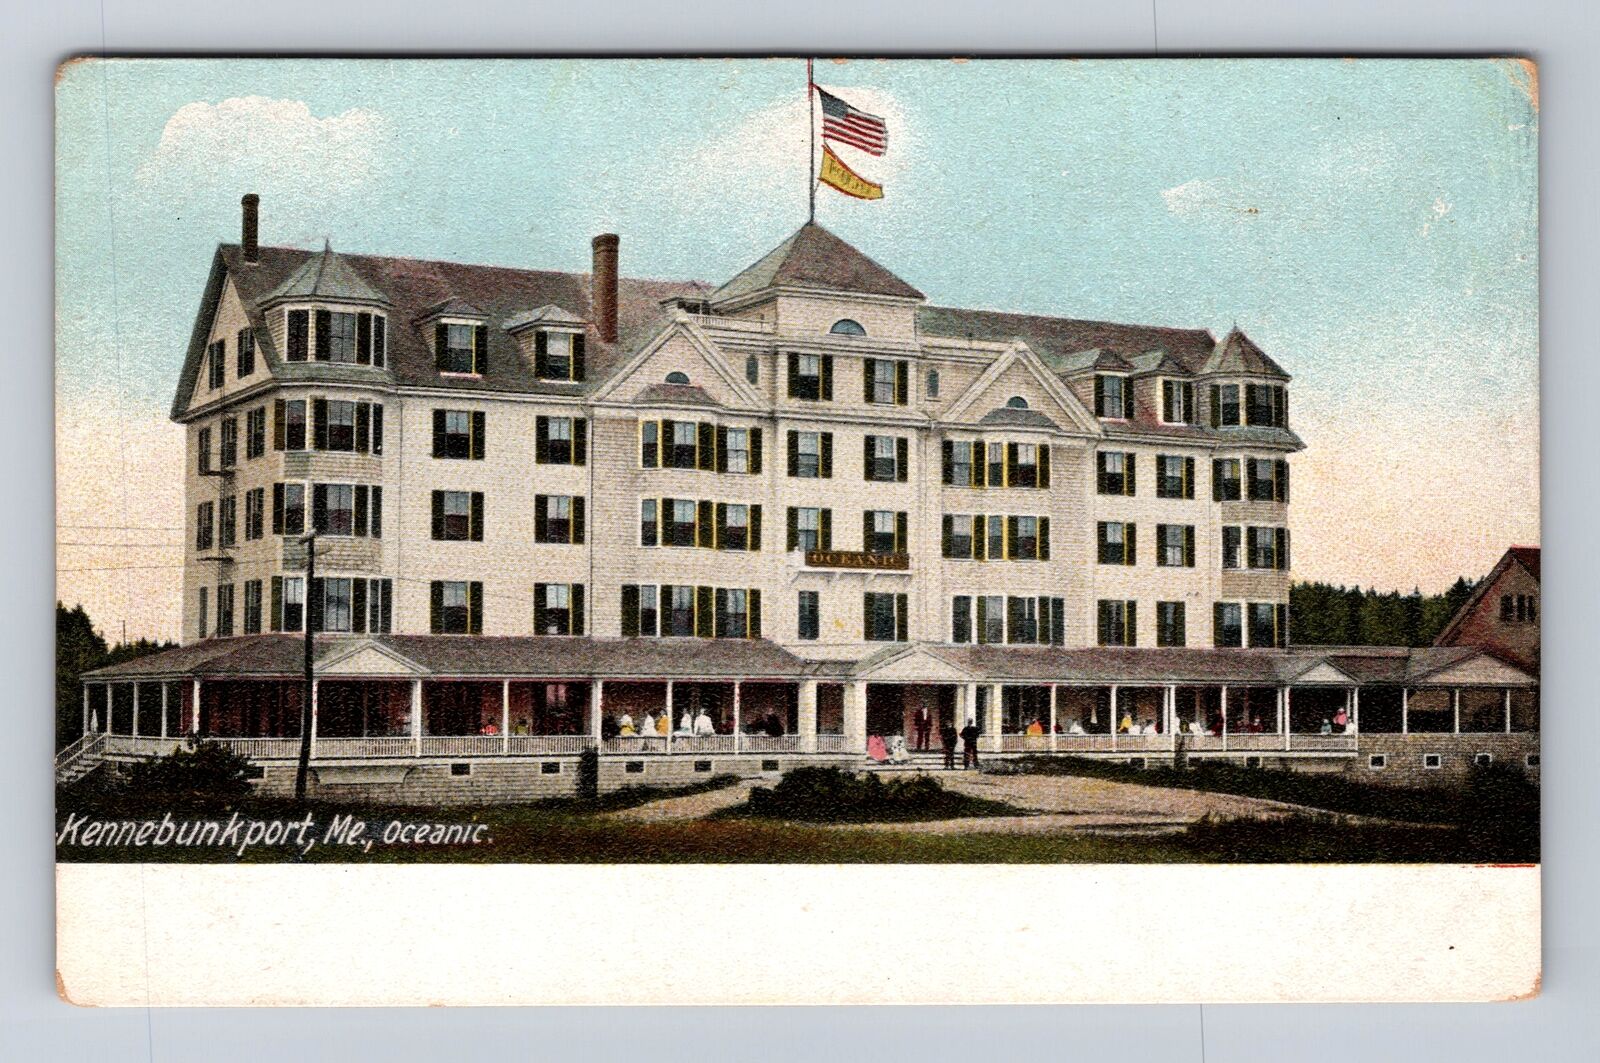 Kennebunkport ME-Maine, Oceanic, Antique, Vintage Souvenir Postcard